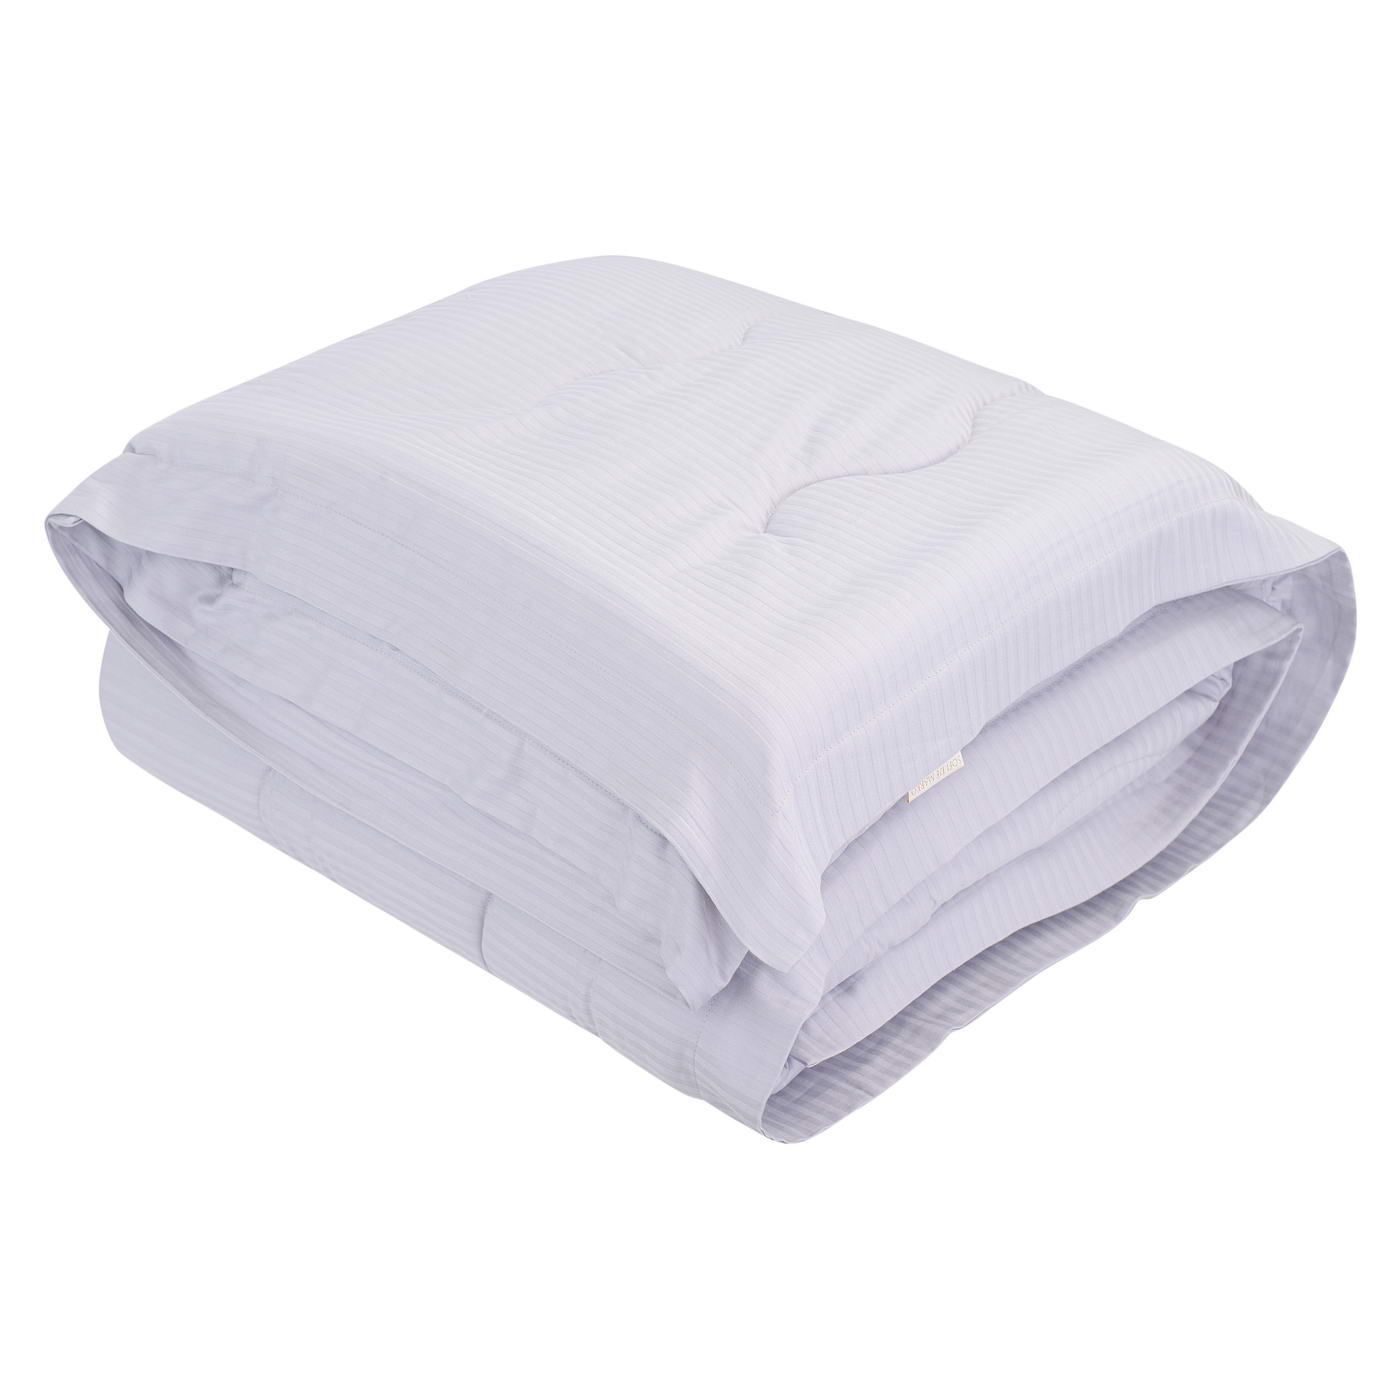 Одеяло Amrita цвет: лиловый (195х220 см), размер 195х220 см sofi951359 Одеяло Amrita цвет: лиловый (195х220 см) - фото 1